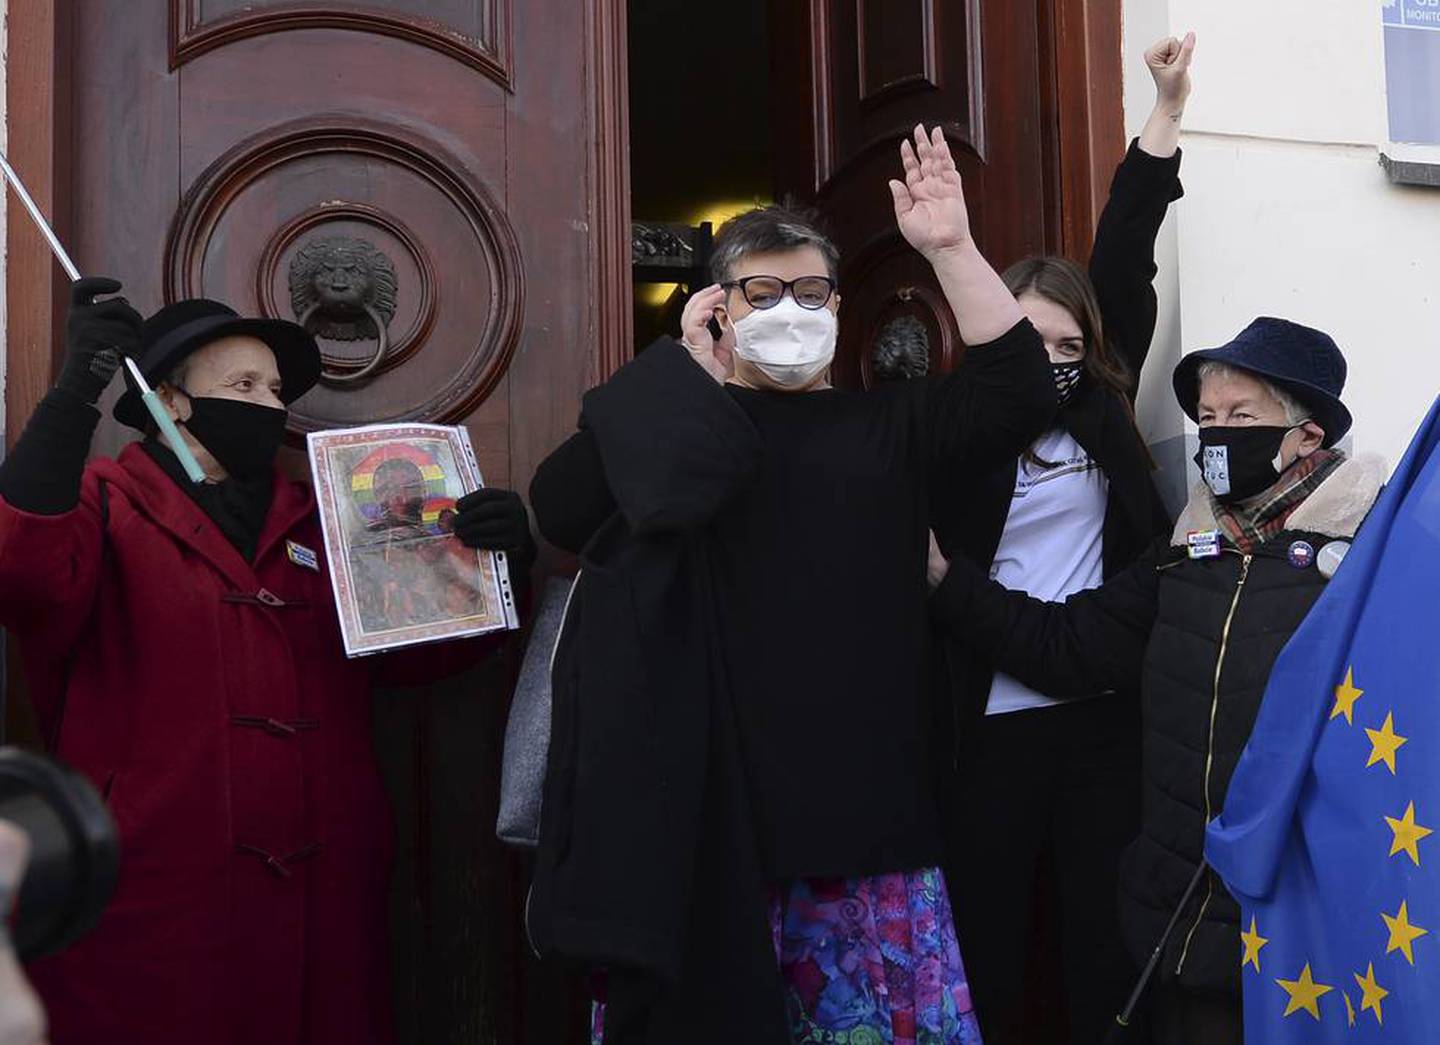 FRIKJENT: De polske aktivistene Elzbieta Podlesna (med briller, i midten), og Anna Prus med støttespillere etter når de forlater rettsbygningen i byen Plock i Polen. (Czarek Sokolowski/AP)